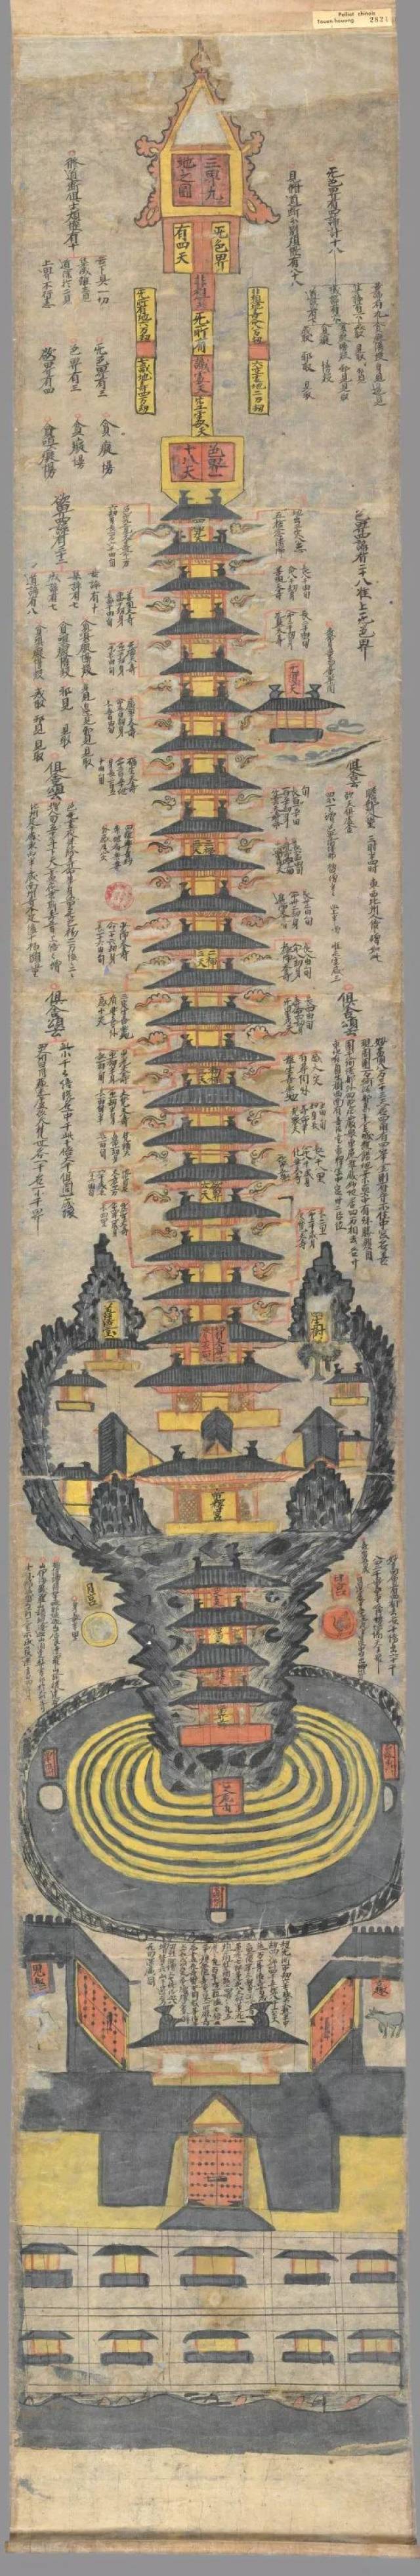 三界九地图×世上最早最完整的佛教三千大千世界图,天人合一图